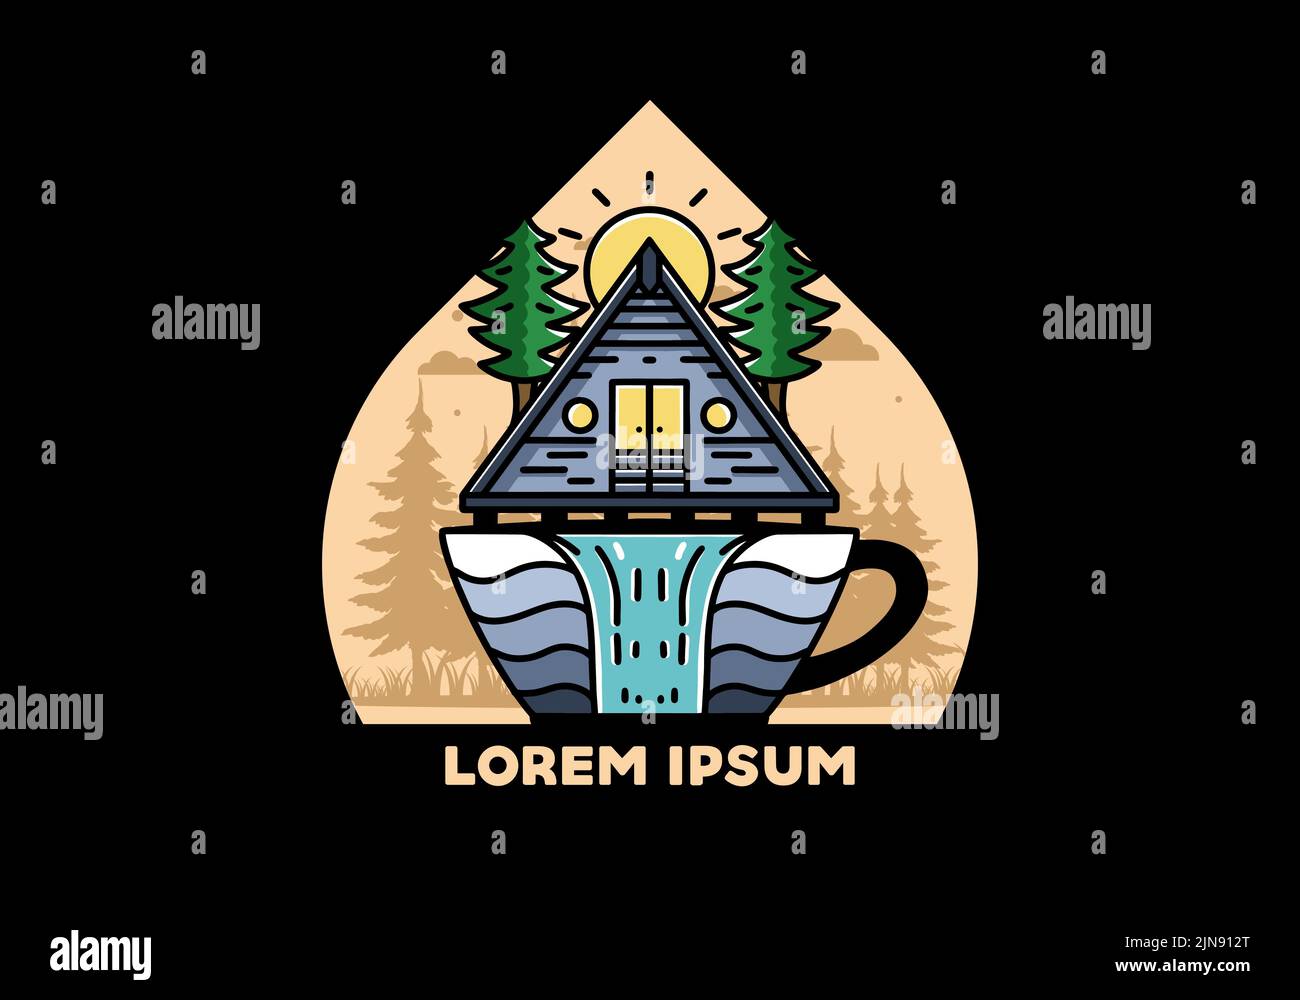 Emblème d'illustration représentant une cabine en bois et des pins sur la forme d'une tasse à café avec chute d'eau Illustration de Vecteur